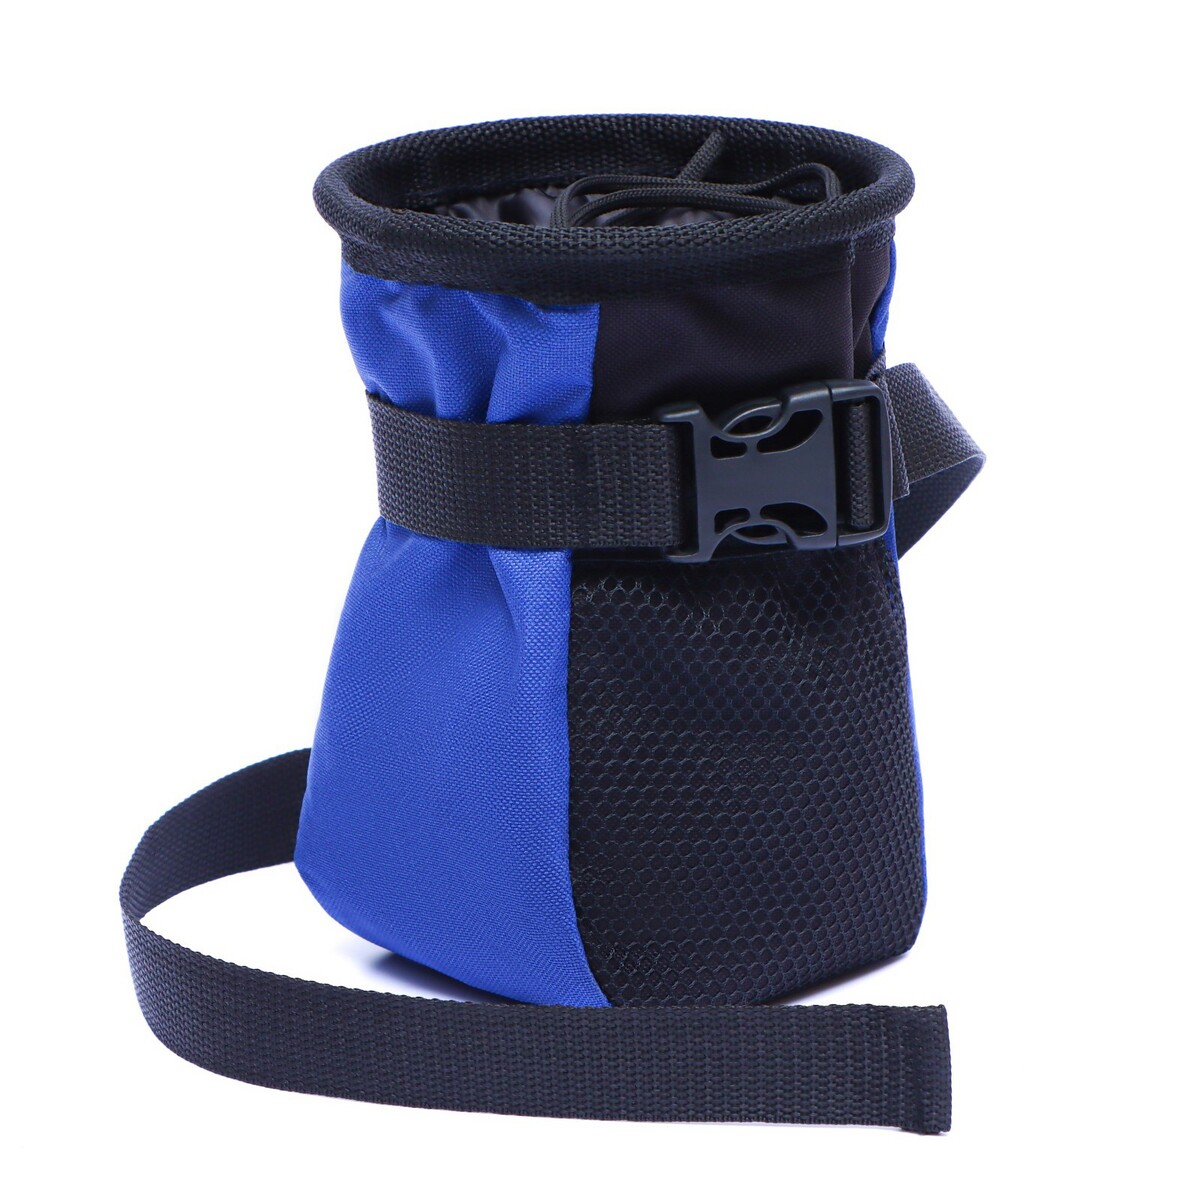 Дрессировочная сумочка для лакомств с ремнем для крепления на пояс, синяя сумка для лакомств с карманом для пакетов 18 х 10 х 18 см синяя